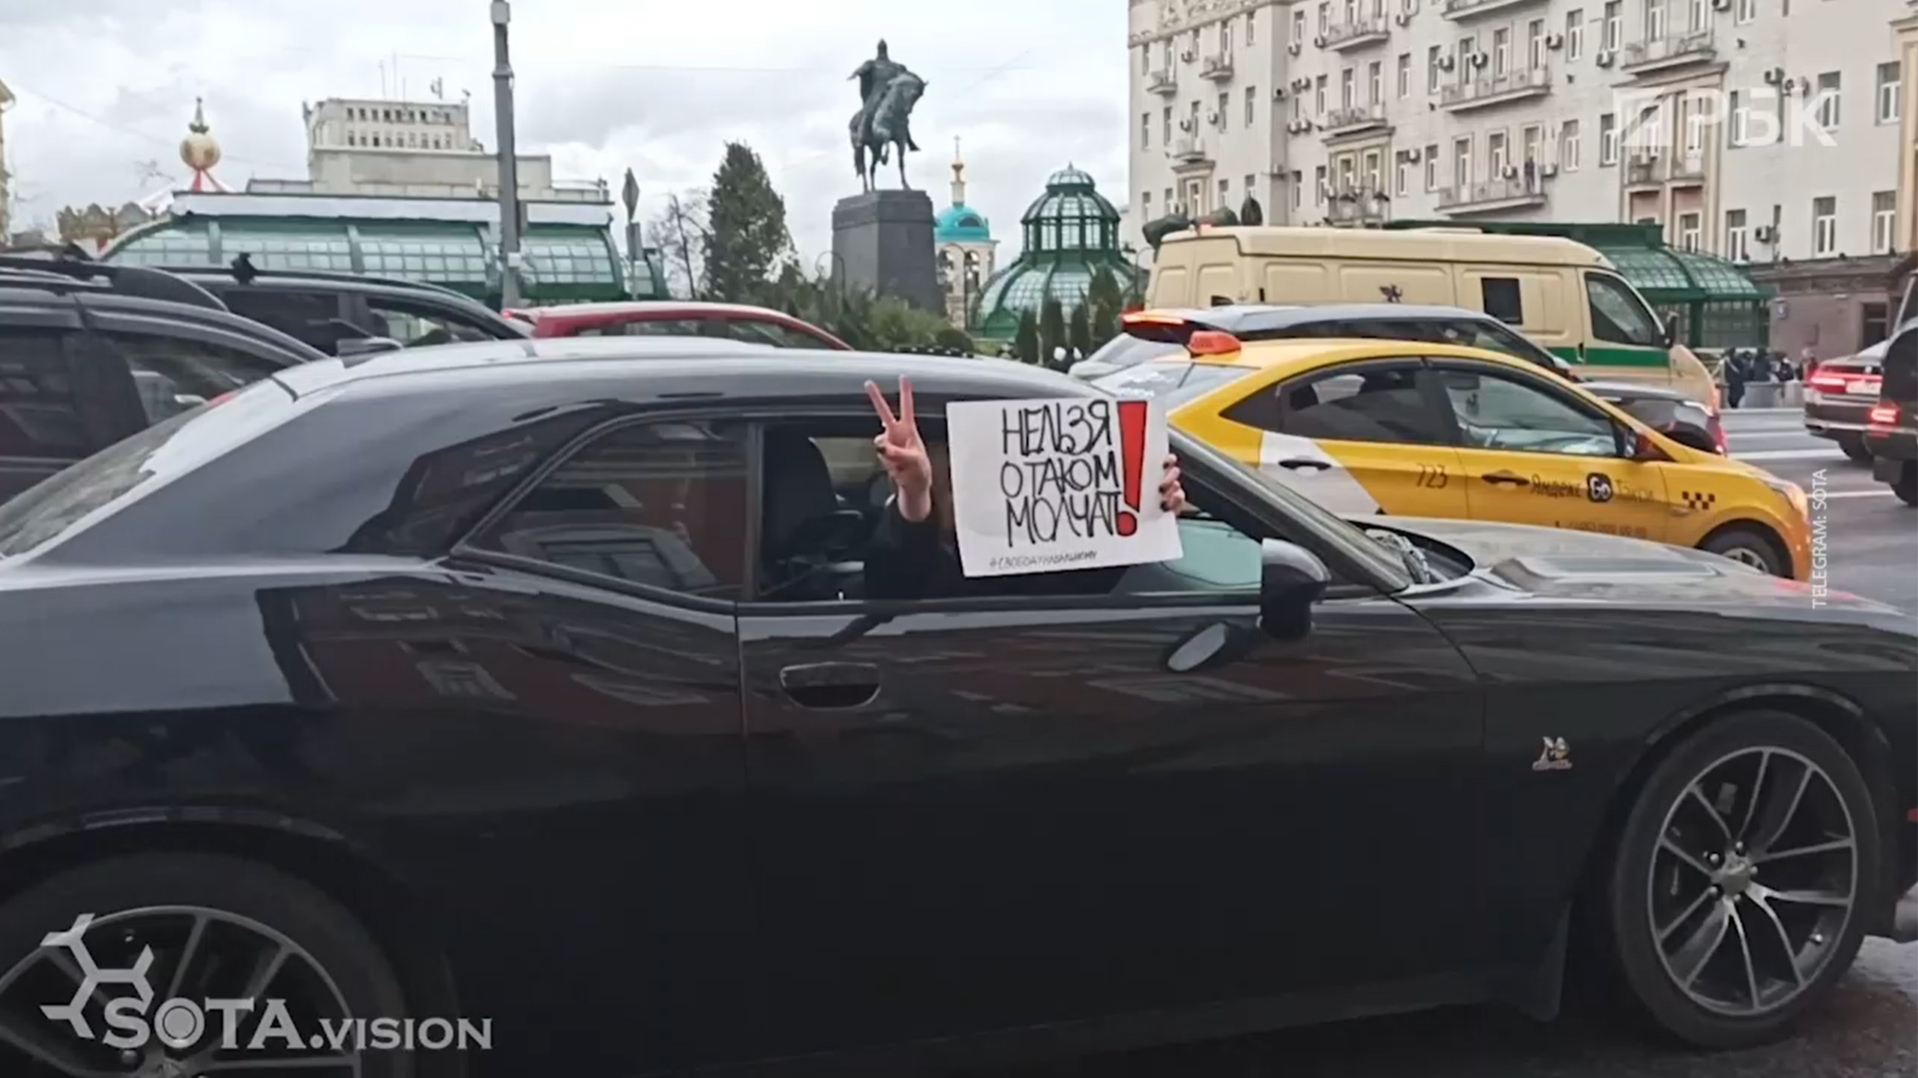 Акция протеста в поддержку Навального. Онлайн